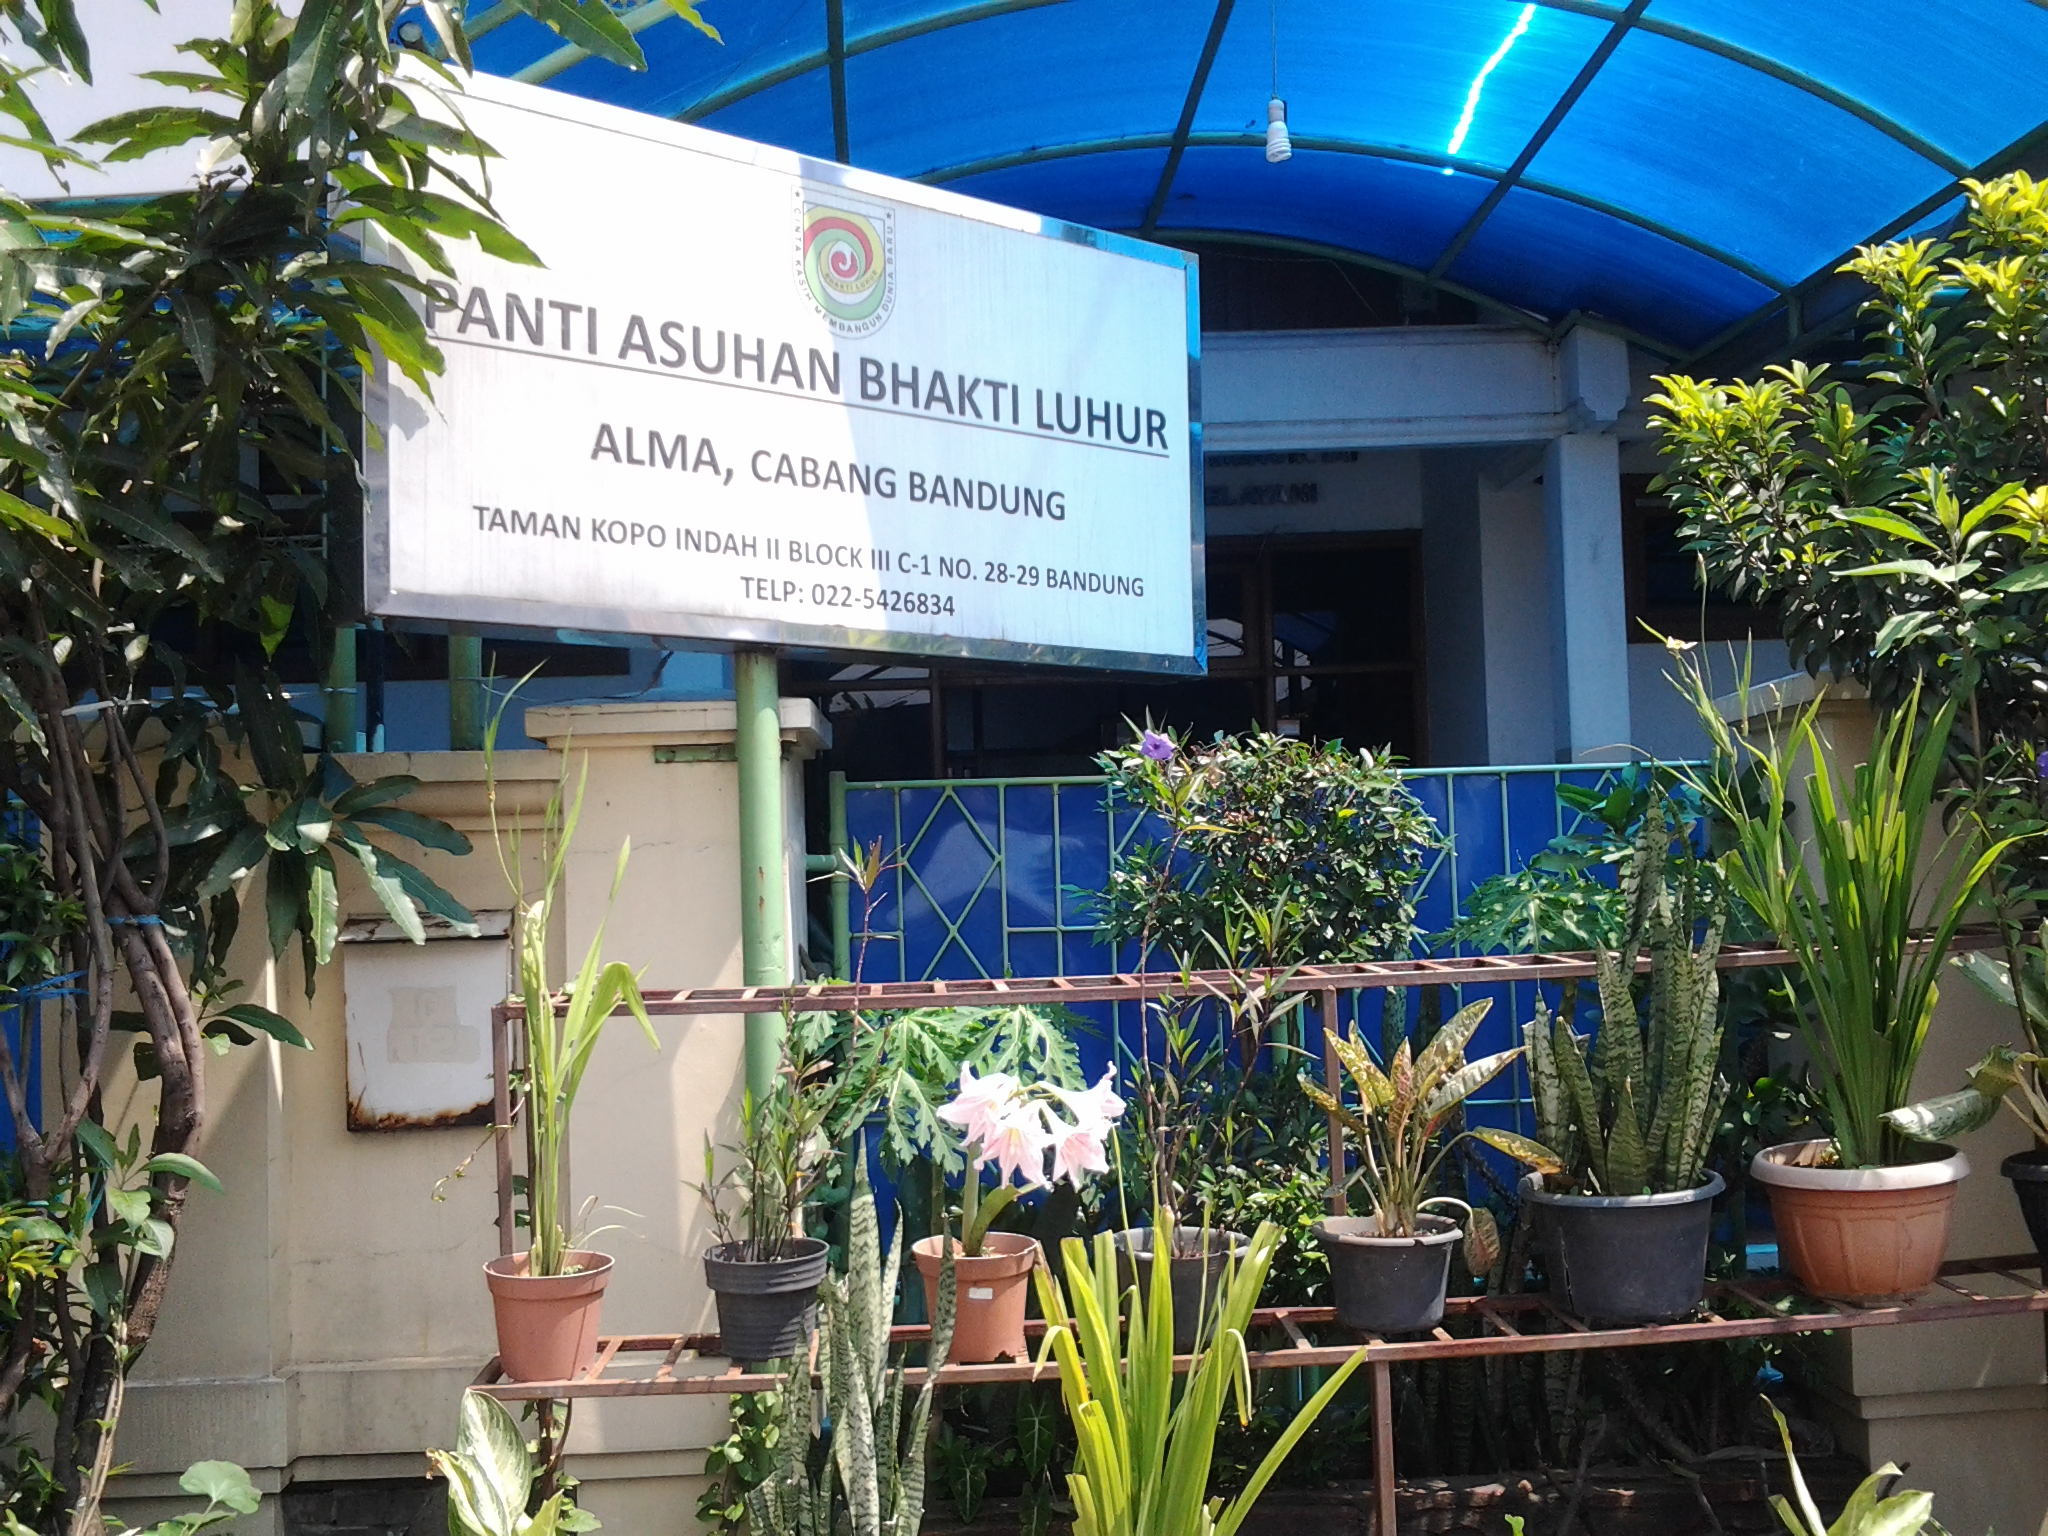 Yayasan Panti Asuhan Bhakti Luhur 1